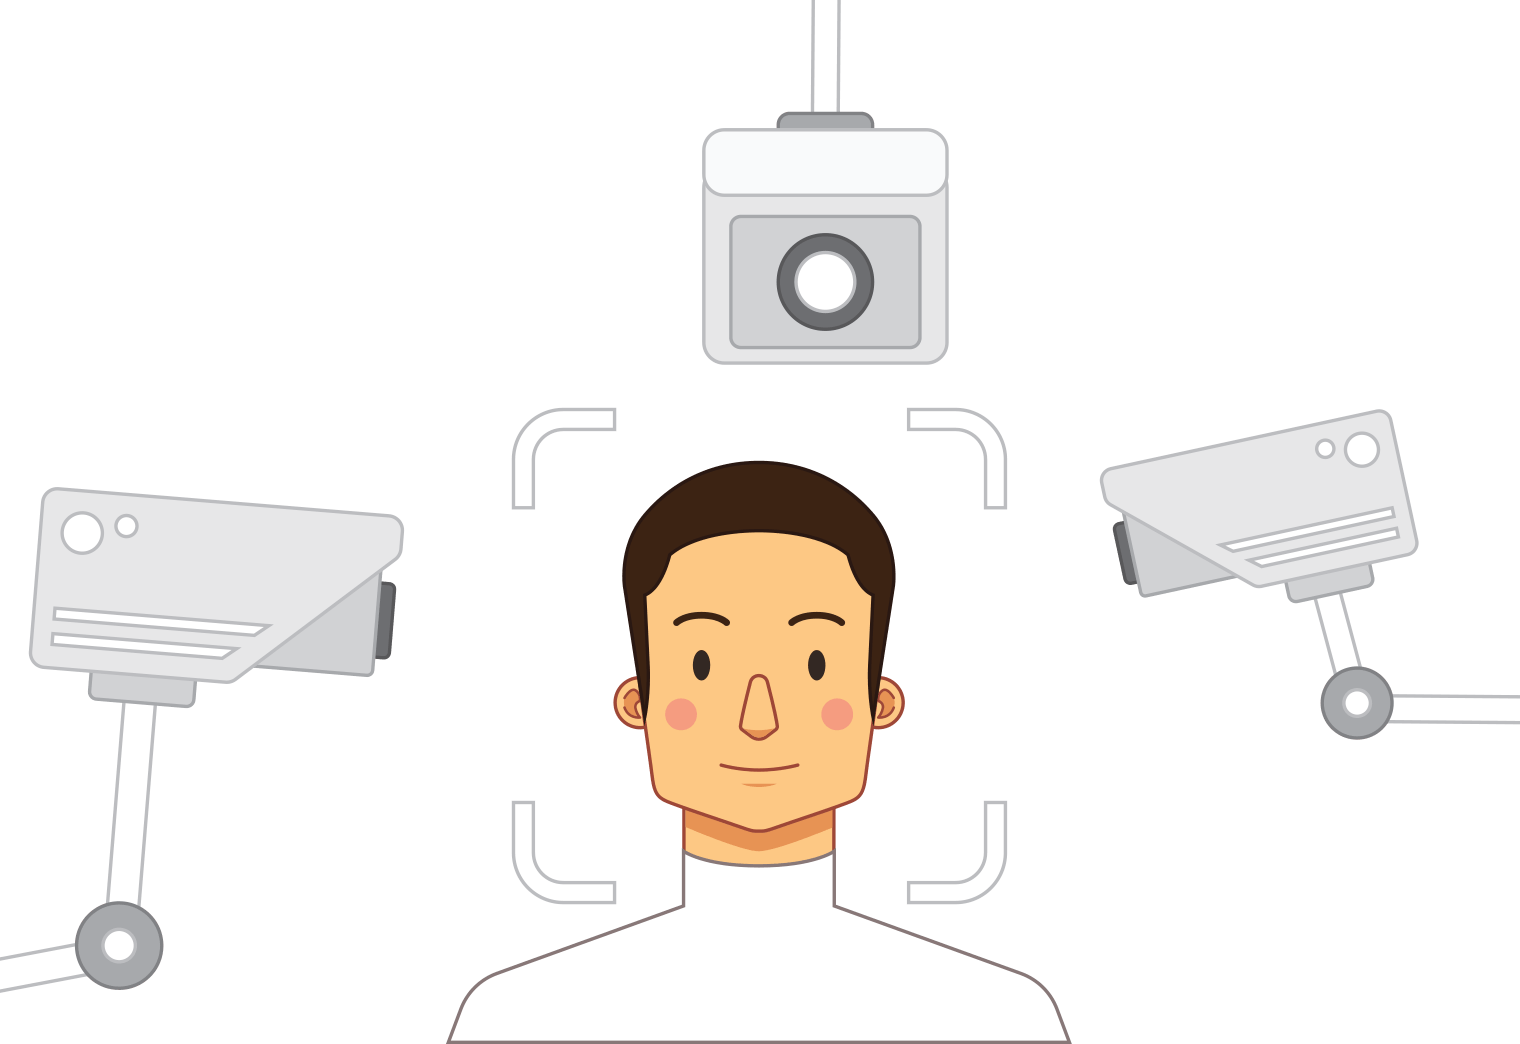 IP Surveillance Cameras: Before You Buy